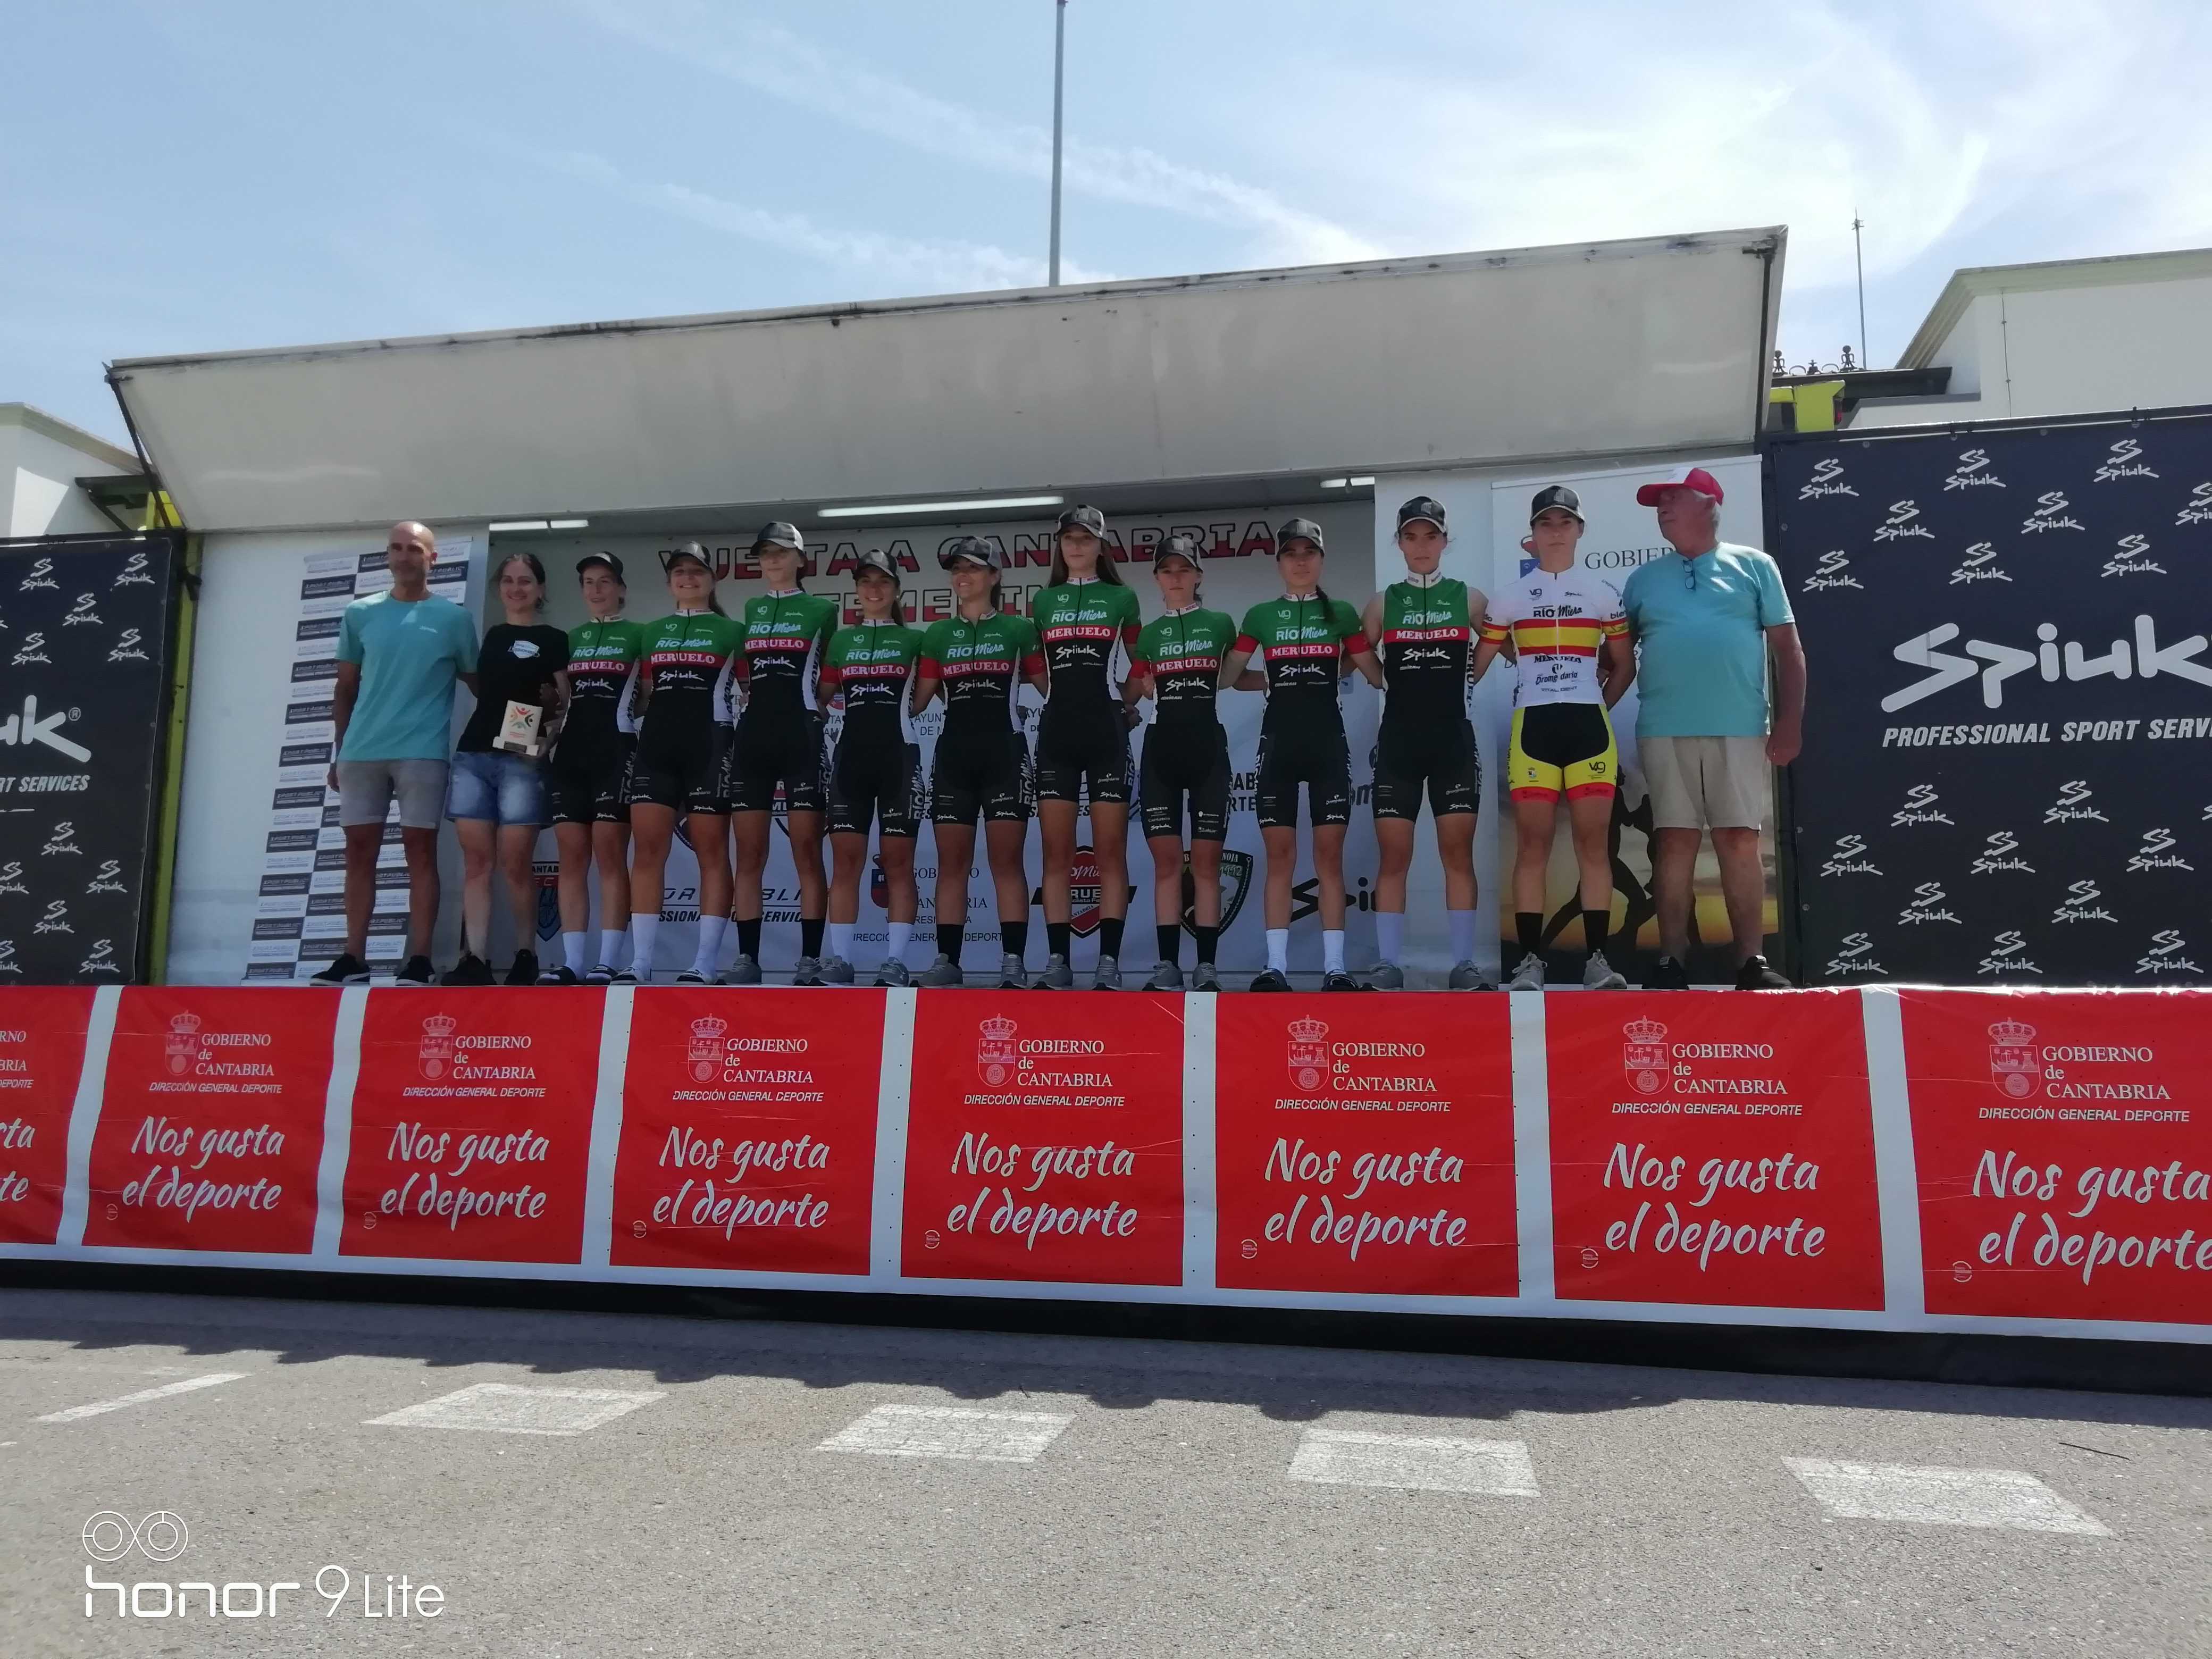 Paula Ostiz y Laura Ruiz vencen con brillantez en la Vuelta a Cantabria Femenina